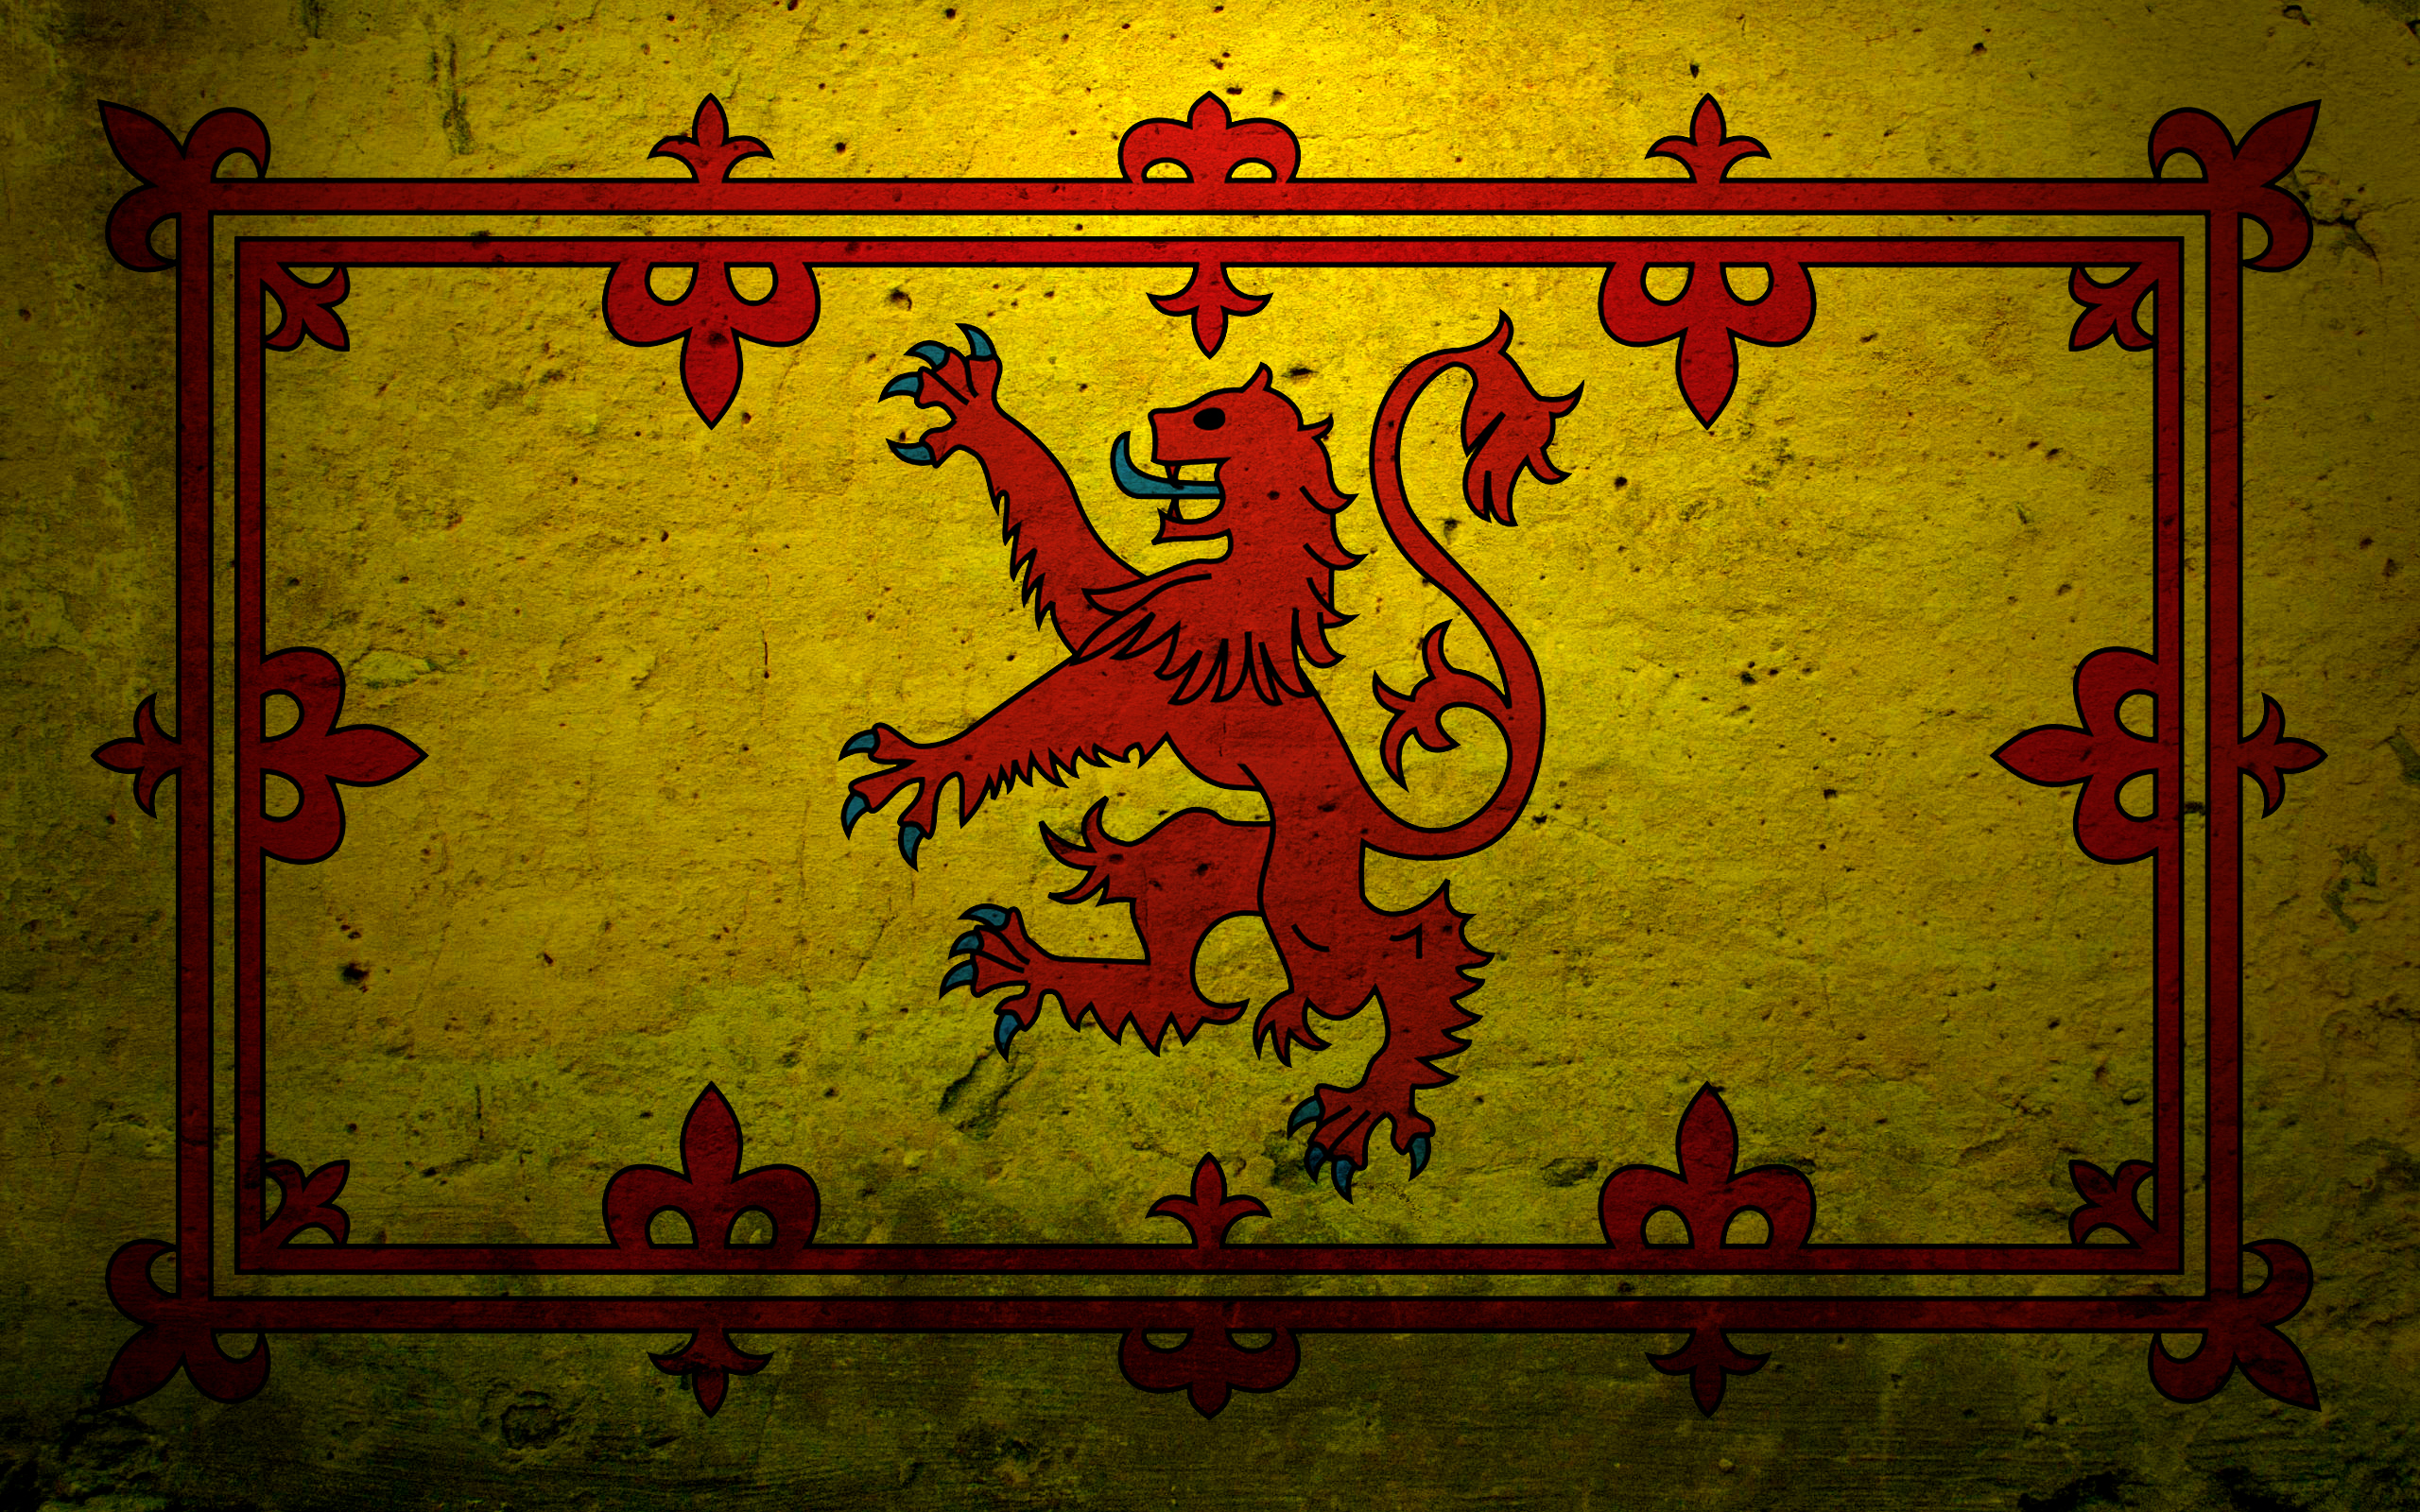 герб шотландии фото